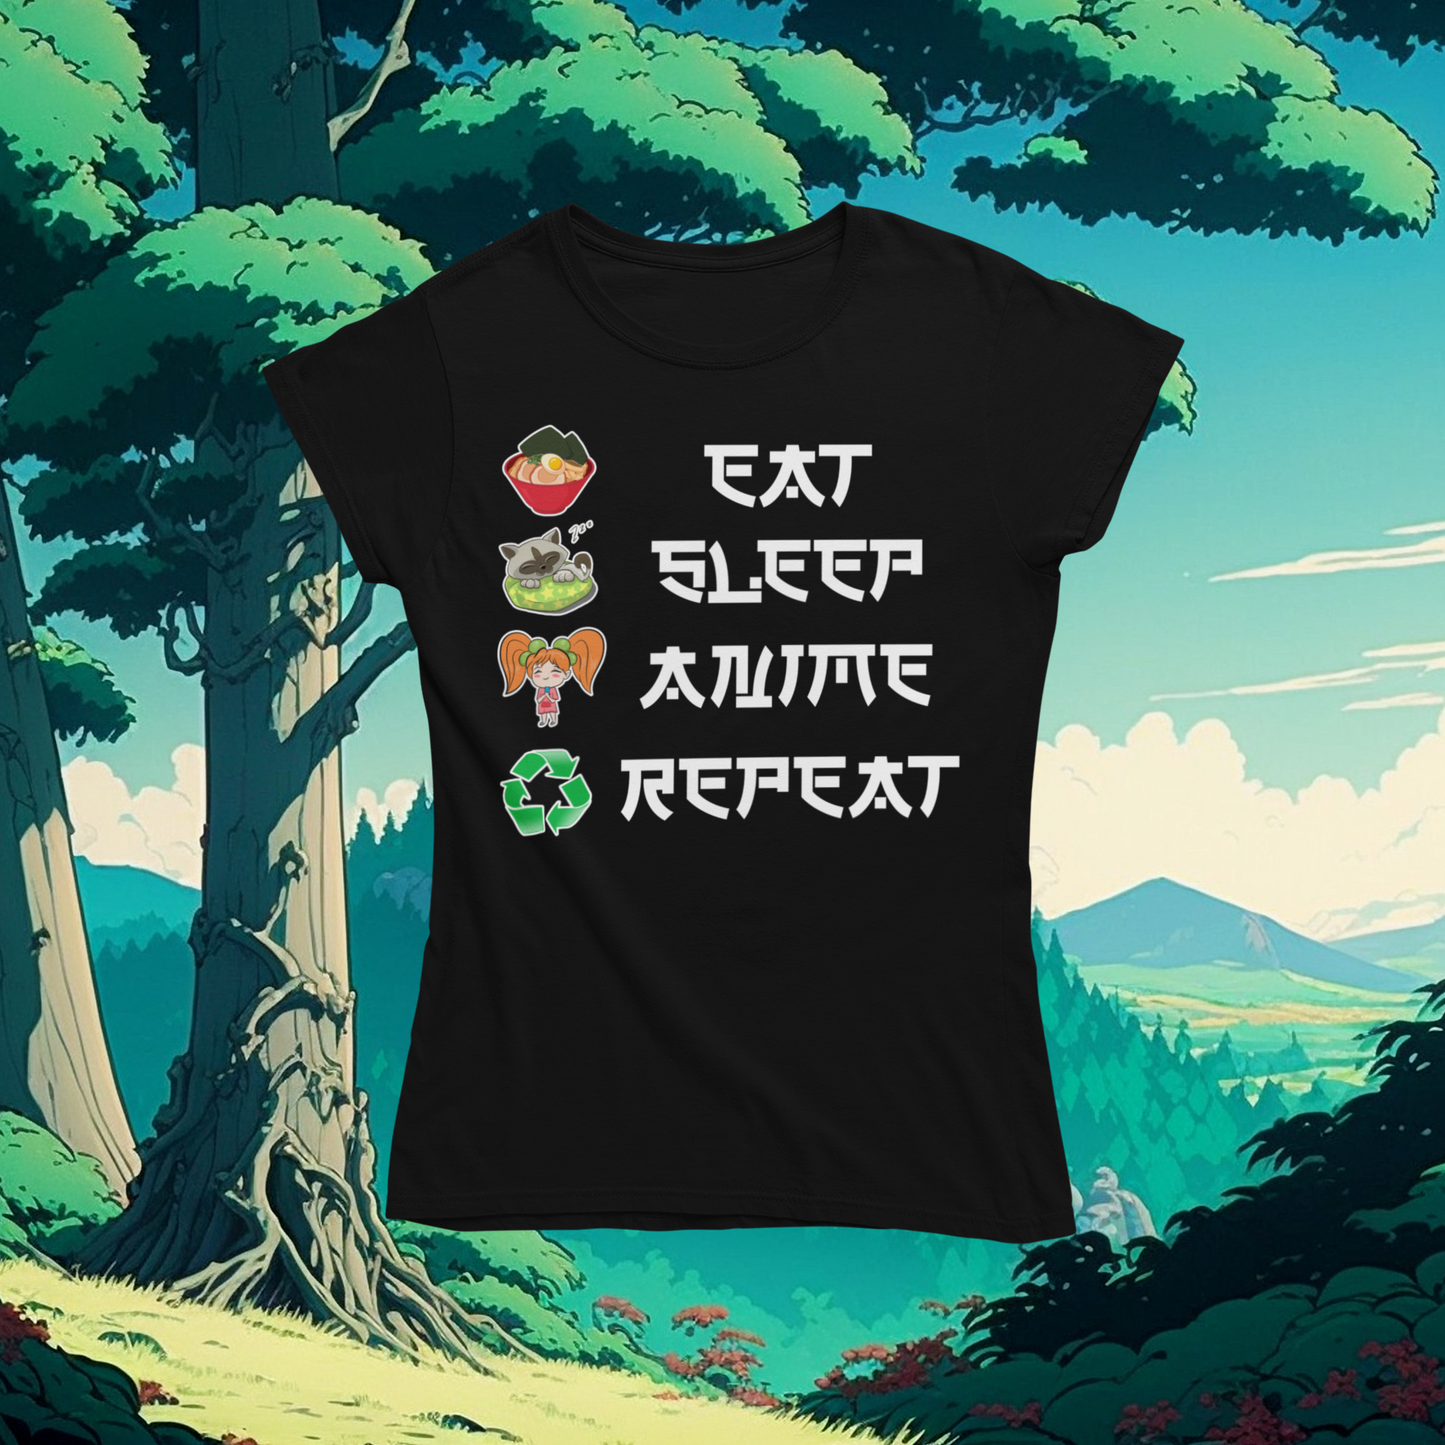 Eat Sleep Anime Repeat Tshirt or Hoodie - Wilson Design Group